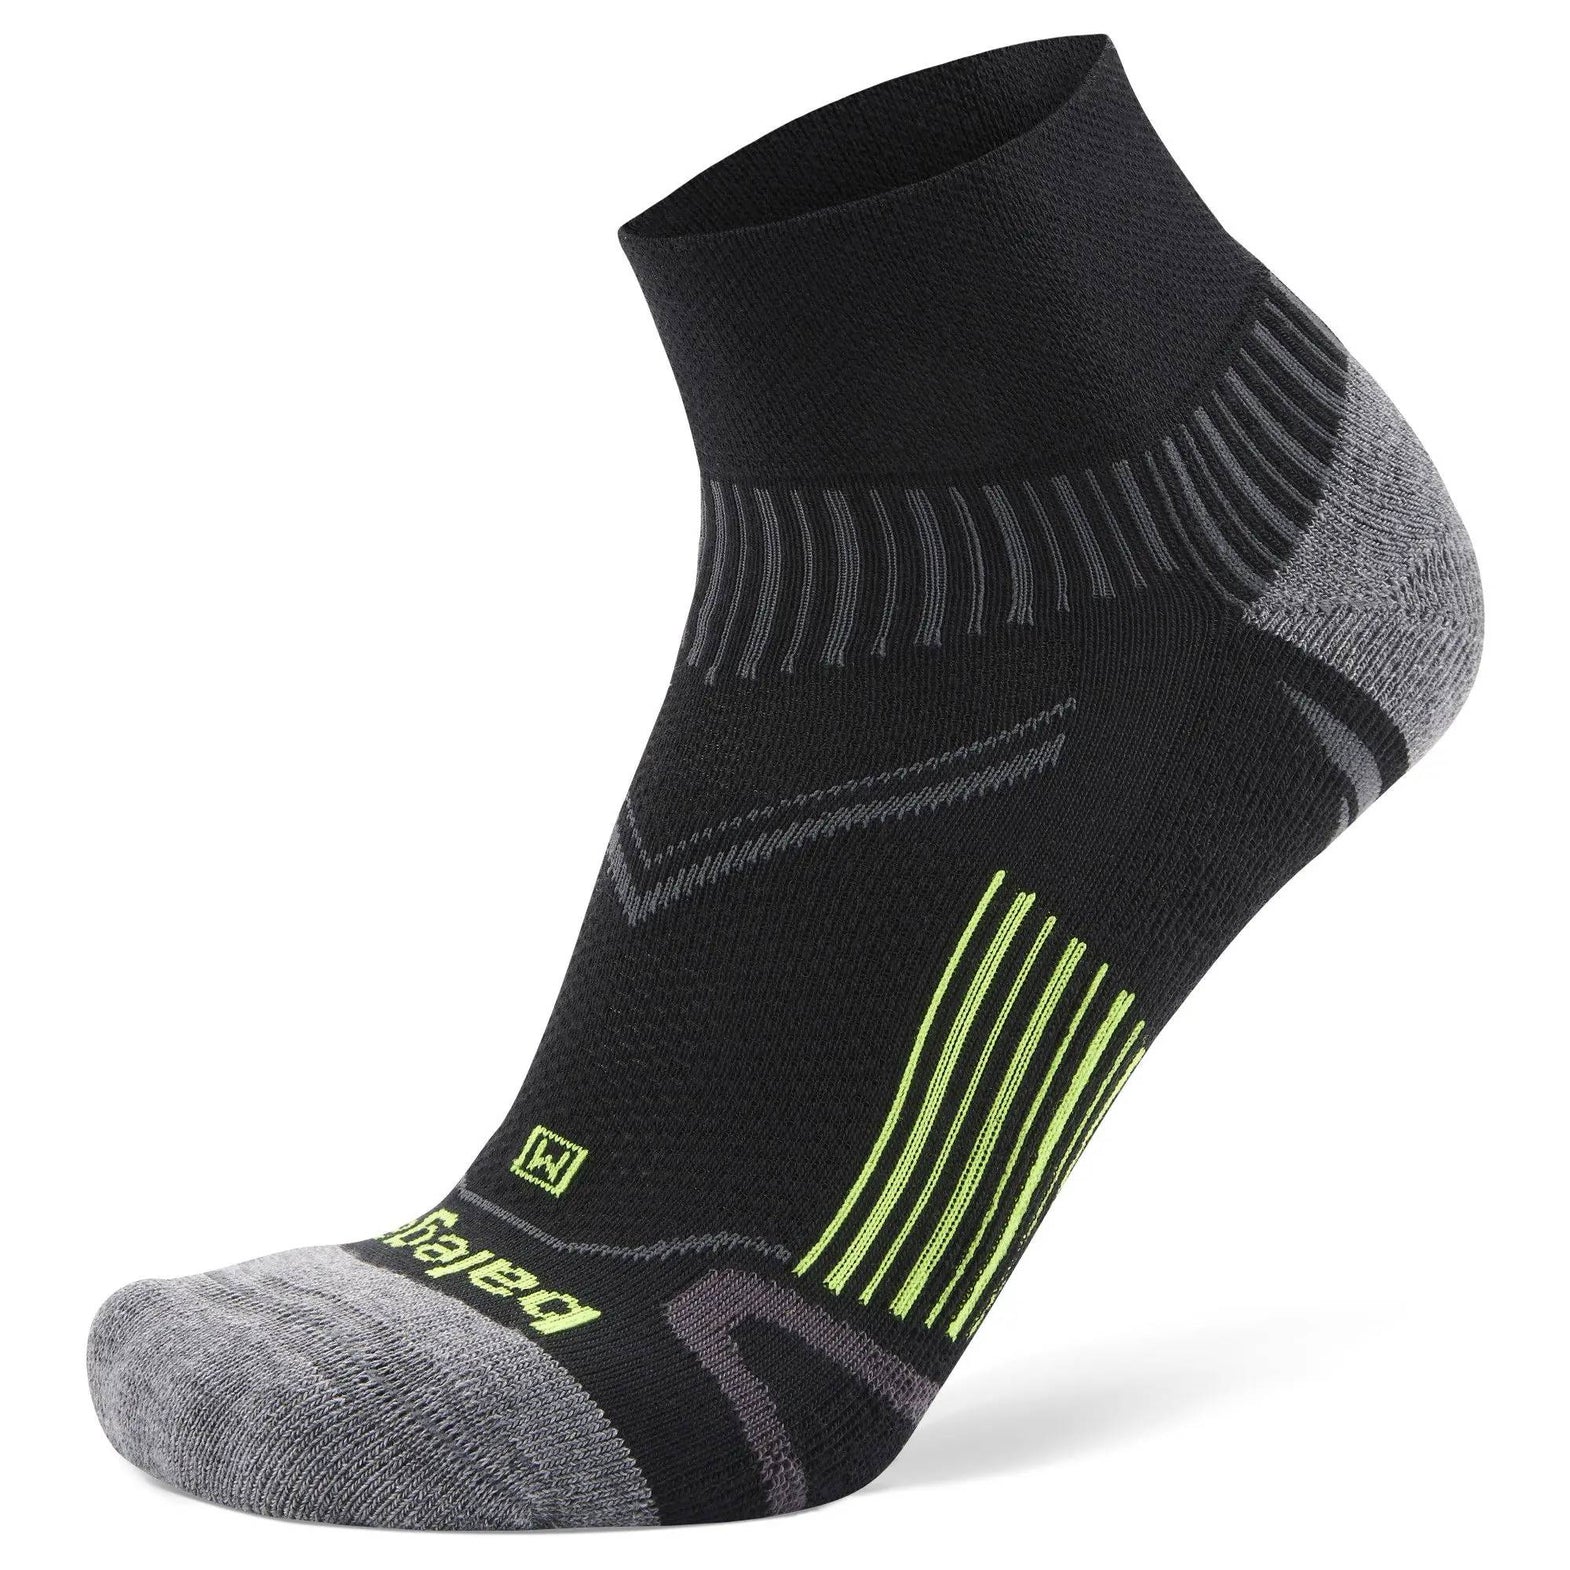 Balega | Official UK Store | Balega Running Socks UK